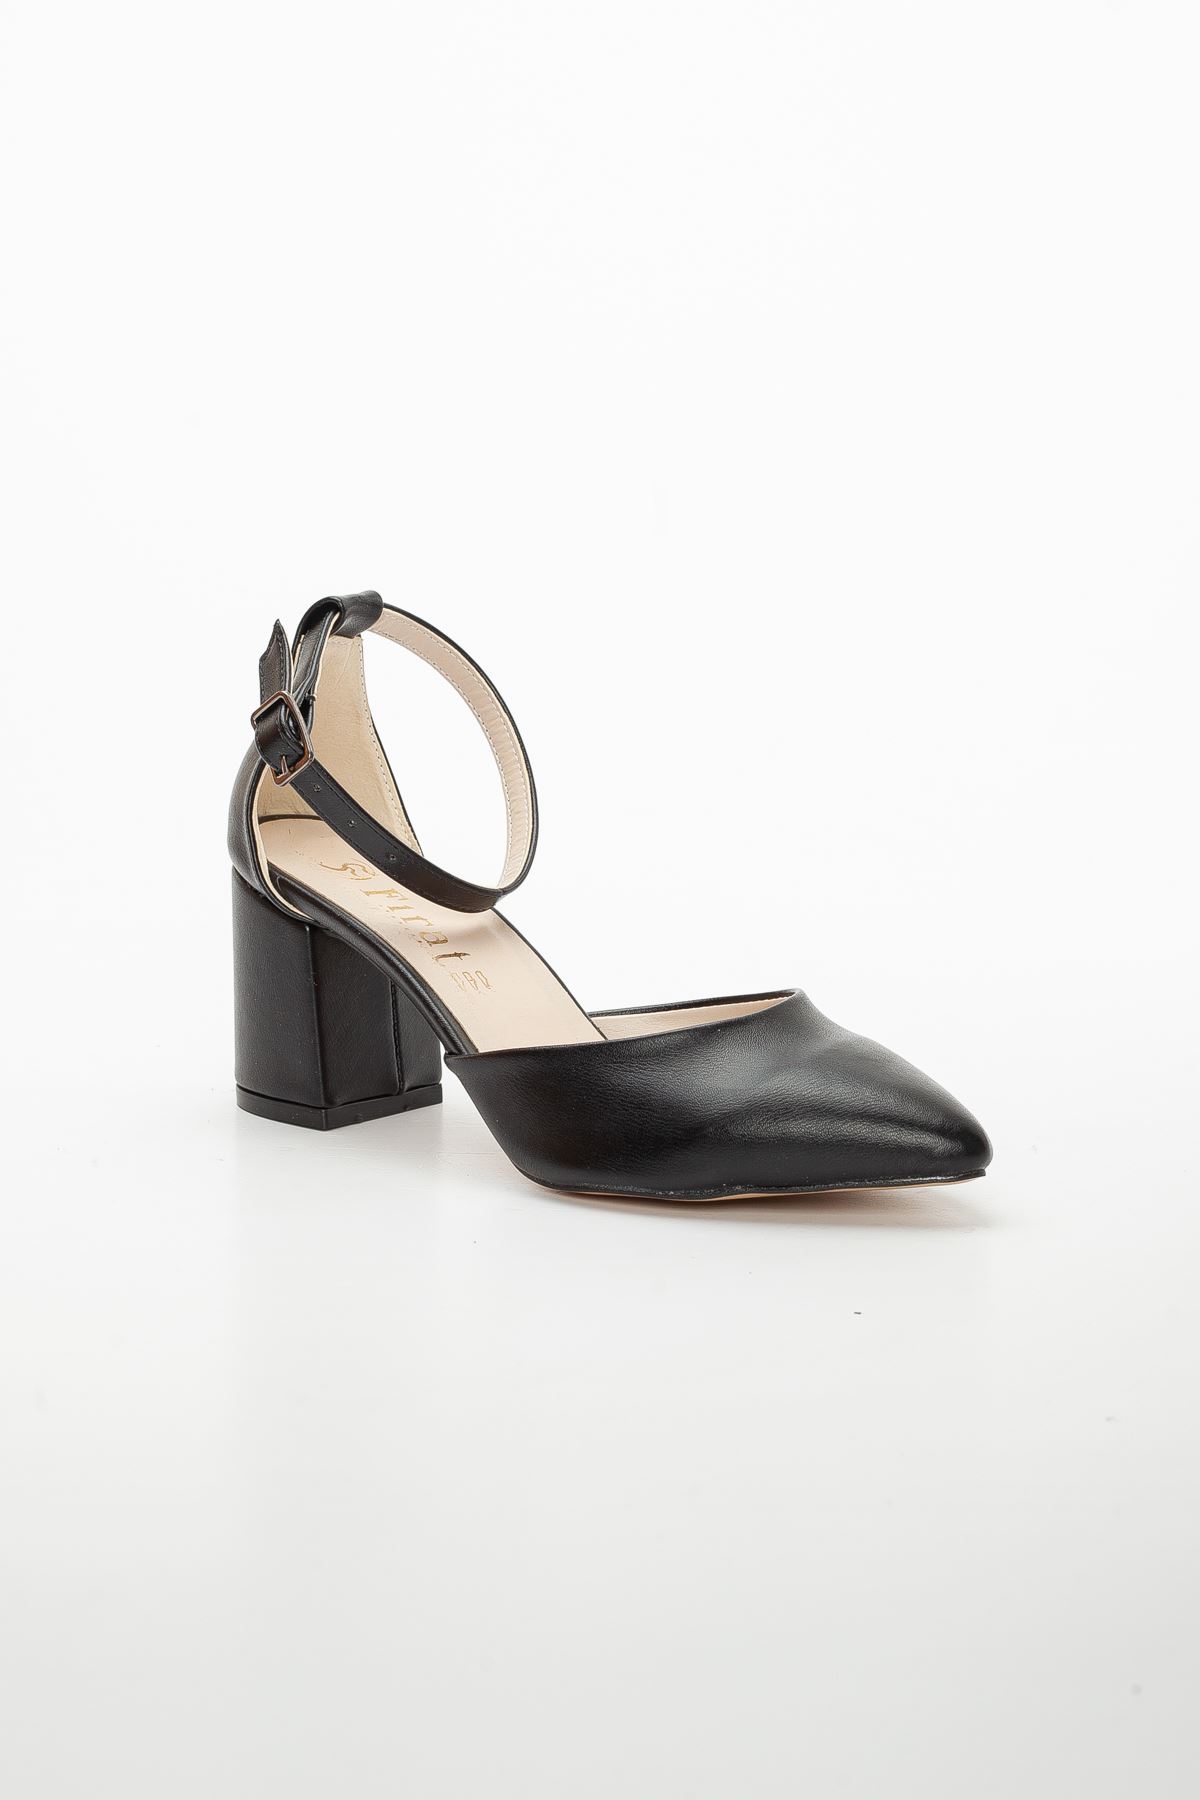 Suzy Topuklu Ayakkabı Siyah